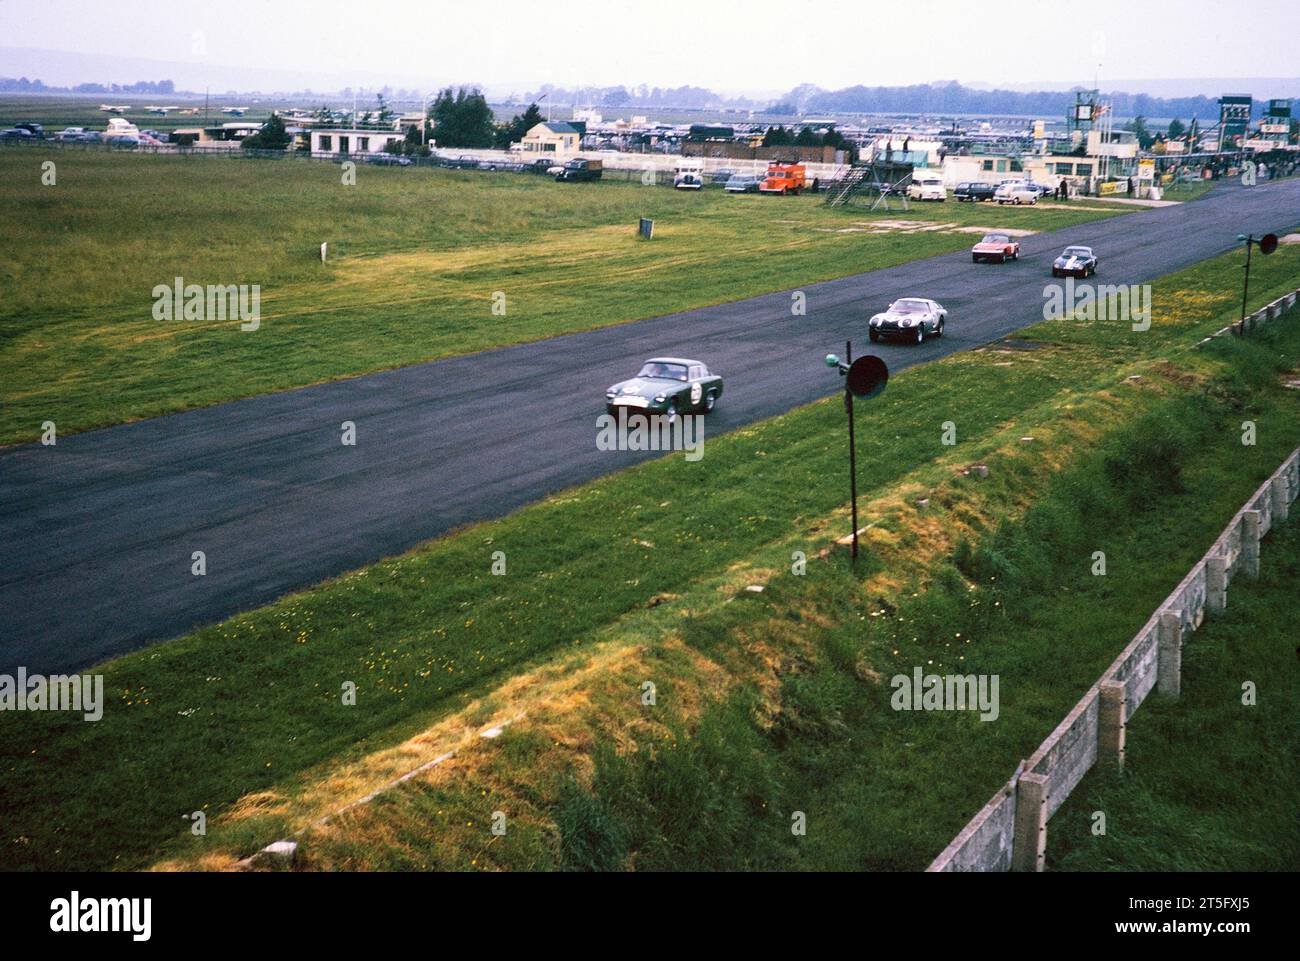 Evento de carreras de motor en el hipódromo Goodwood, Chichester, West Sussex, Inglaterra, Reino Unido agosto de 1963 Foto de stock